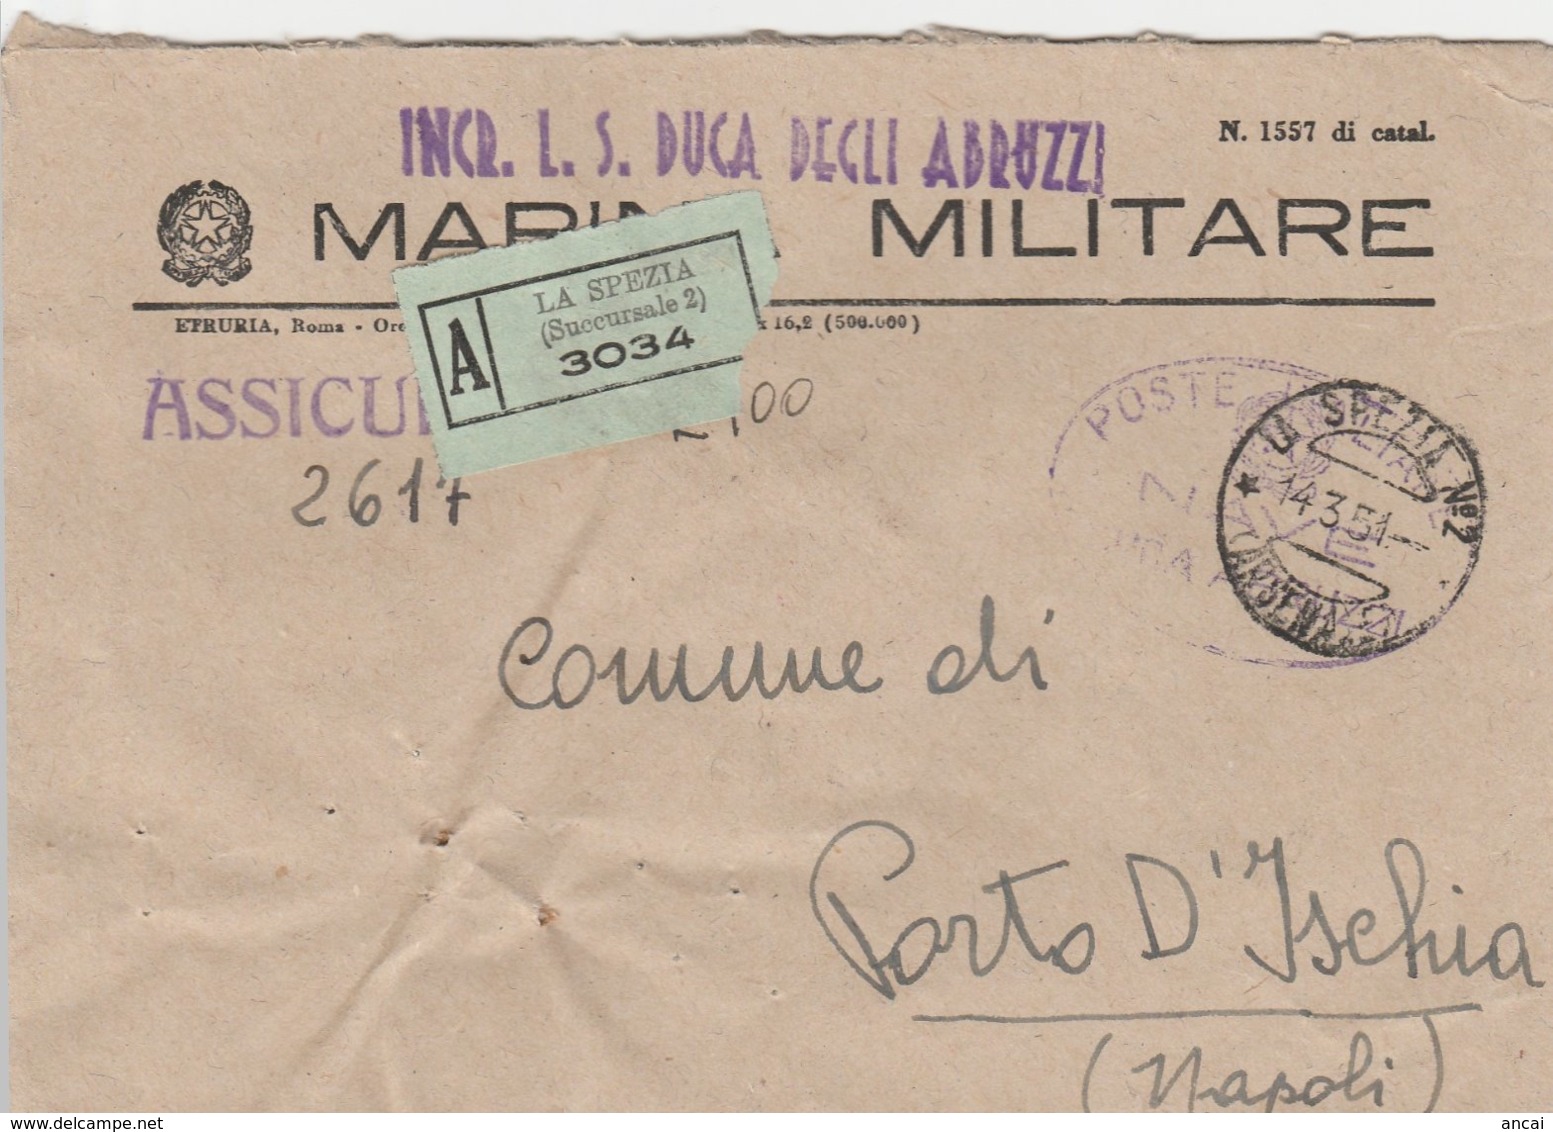 1951. Annullo LA SPEZIA N°2 (ARSENALE) Su Busta MARINA MILITARE, Assicurata . INCROCIATORE L.S. DUCA DEGLI ABRUZZI. - Documenti